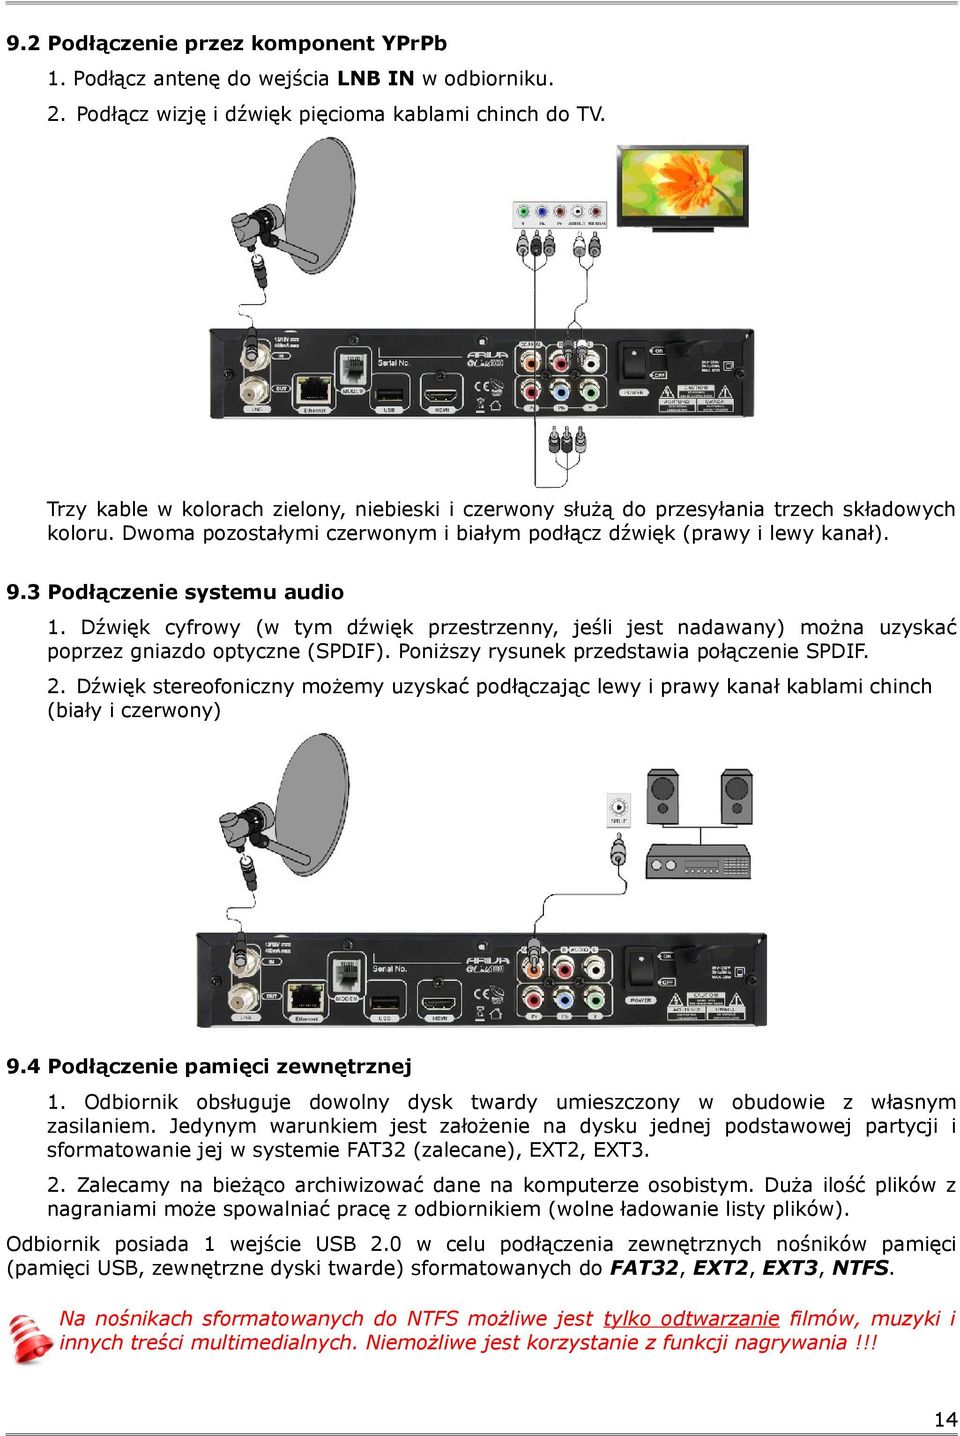 3 Podłączenie systemu audio 1. Dźwięk cyfrowy (w tym dźwięk przestrzenny, jeśli jest nadawany) można uzyskać poprzez gniazdo optyczne (SPDIF). Poniższy rysunek przedstawia połączenie SPDIF. 2.